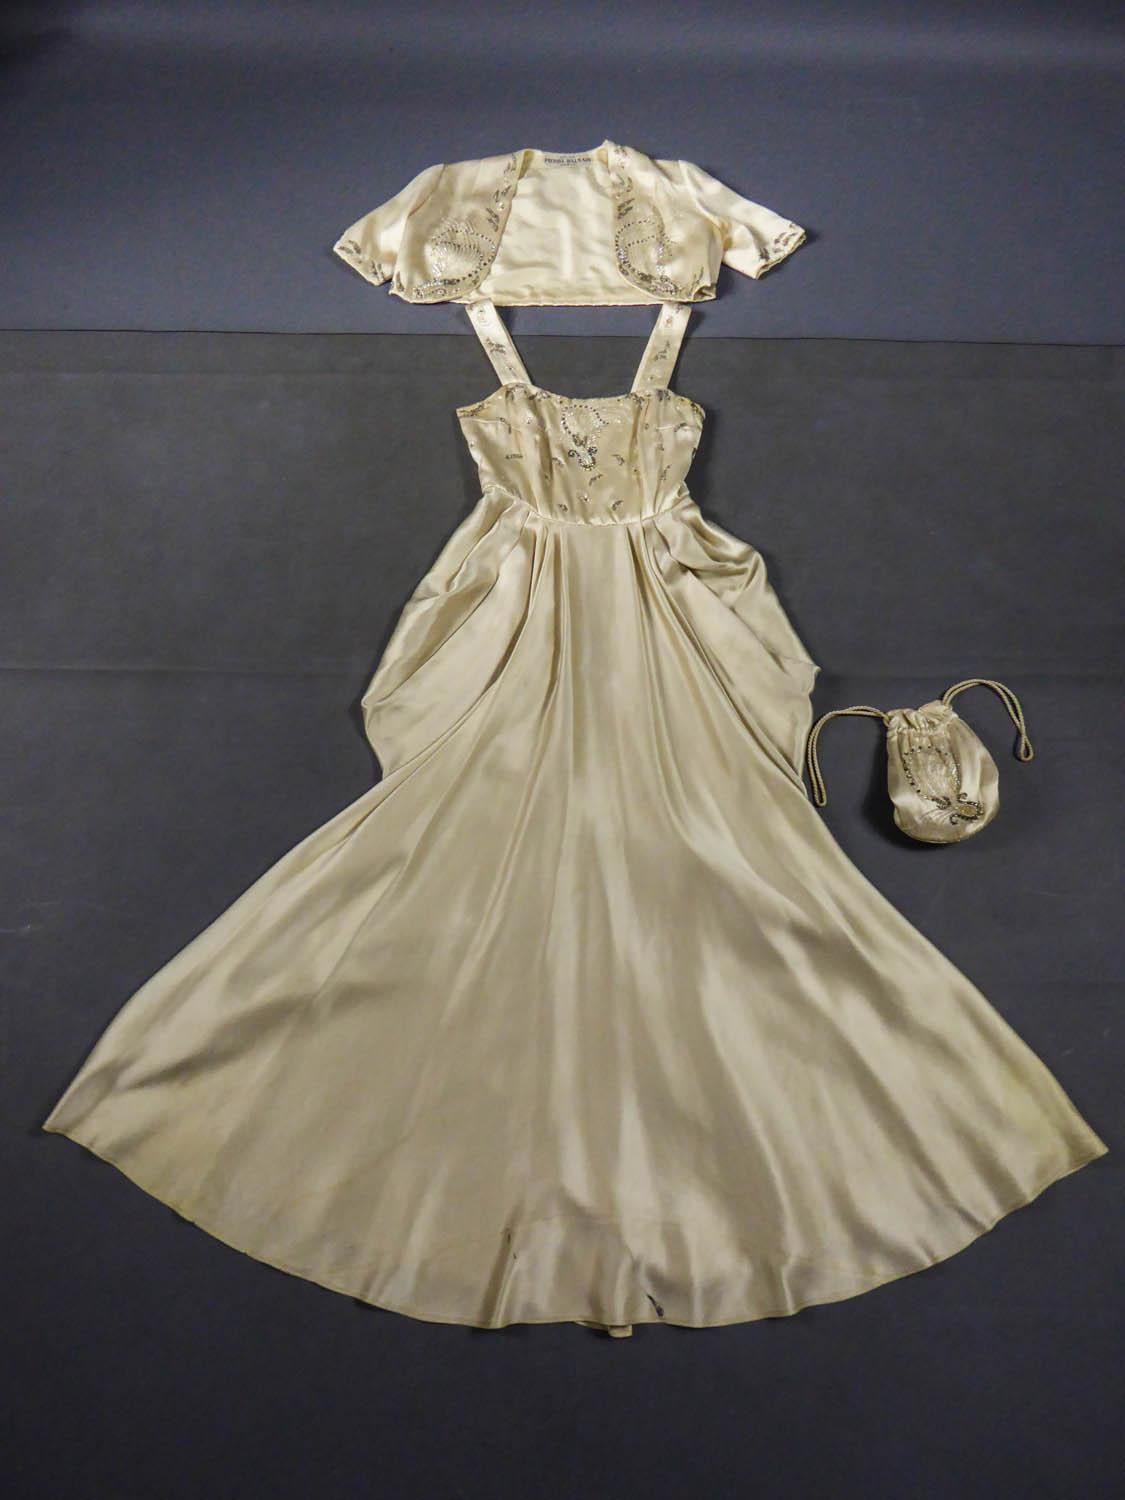 CIRCA 1950
Frankreich

Pierre Balmain Paris Abend- oder Festkleid mit passendem Bolero und Handtasche aus den 1950er Jahren. Elfenbeinfarbener Duchess-Satin, bestickt mit weißen und silbernen Tulpenperlen, Zuchtperlen, silbernen Pailletten und